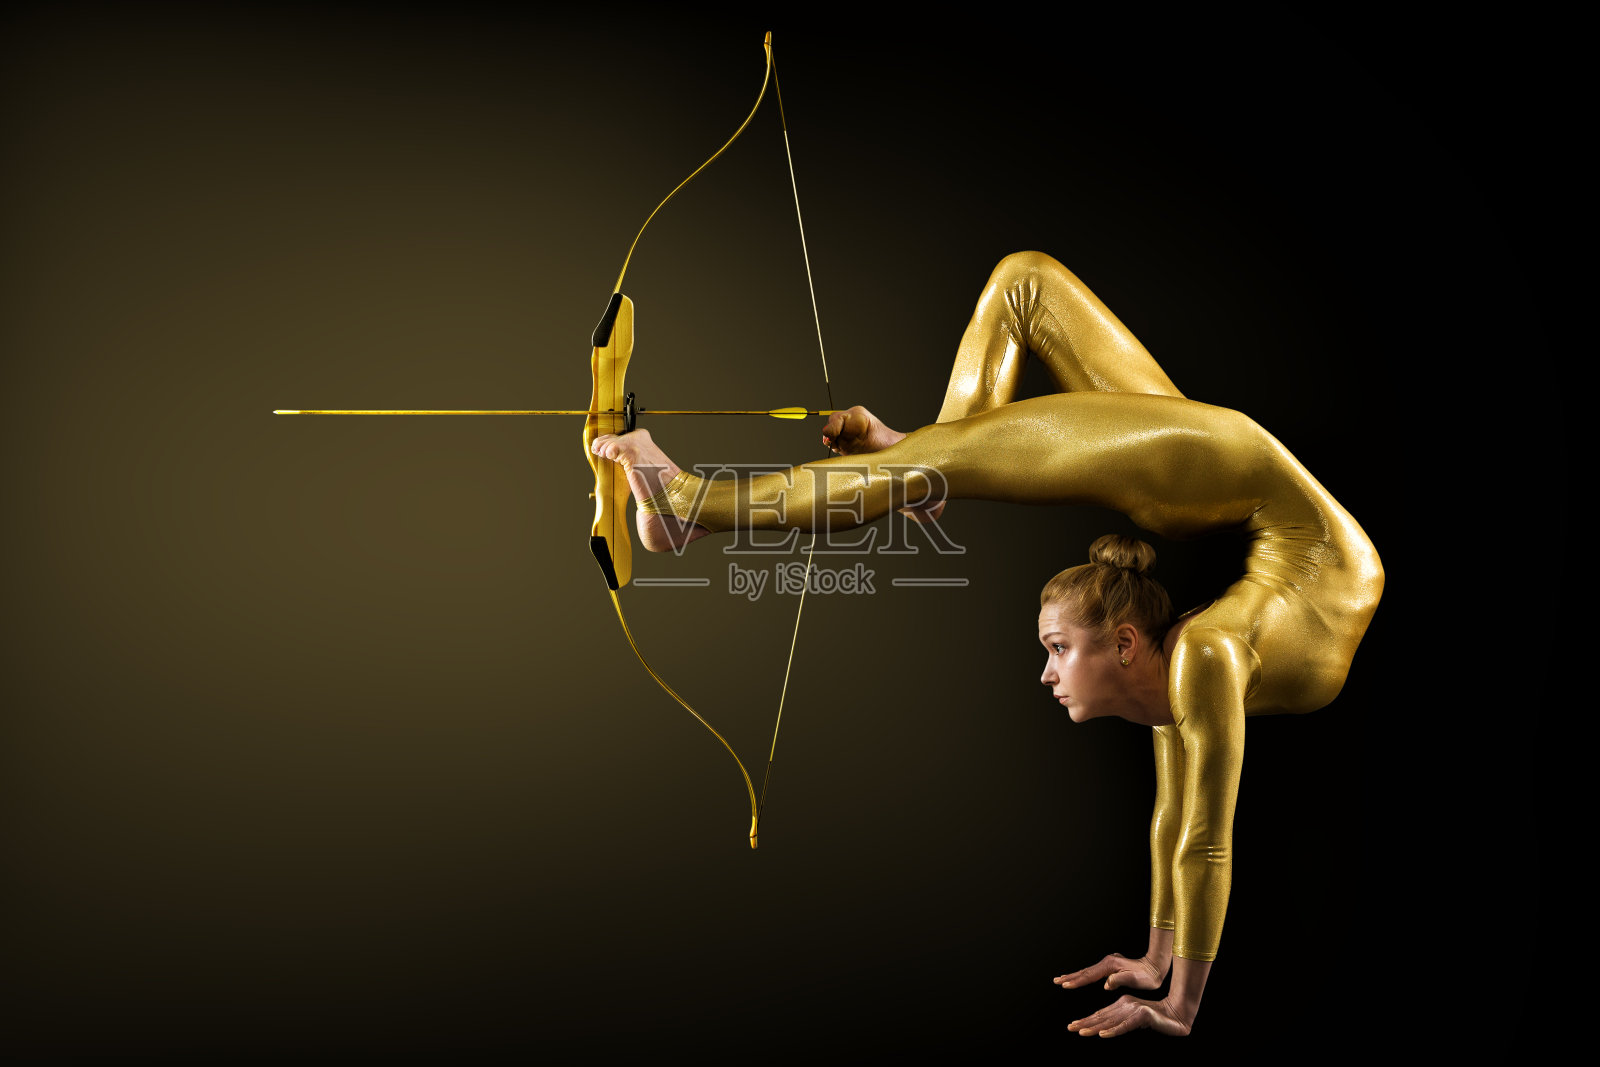 用金弓和箭的腿射箭。柔韧体操手倒立瞄准目标。目标实现的概念照片摄影图片